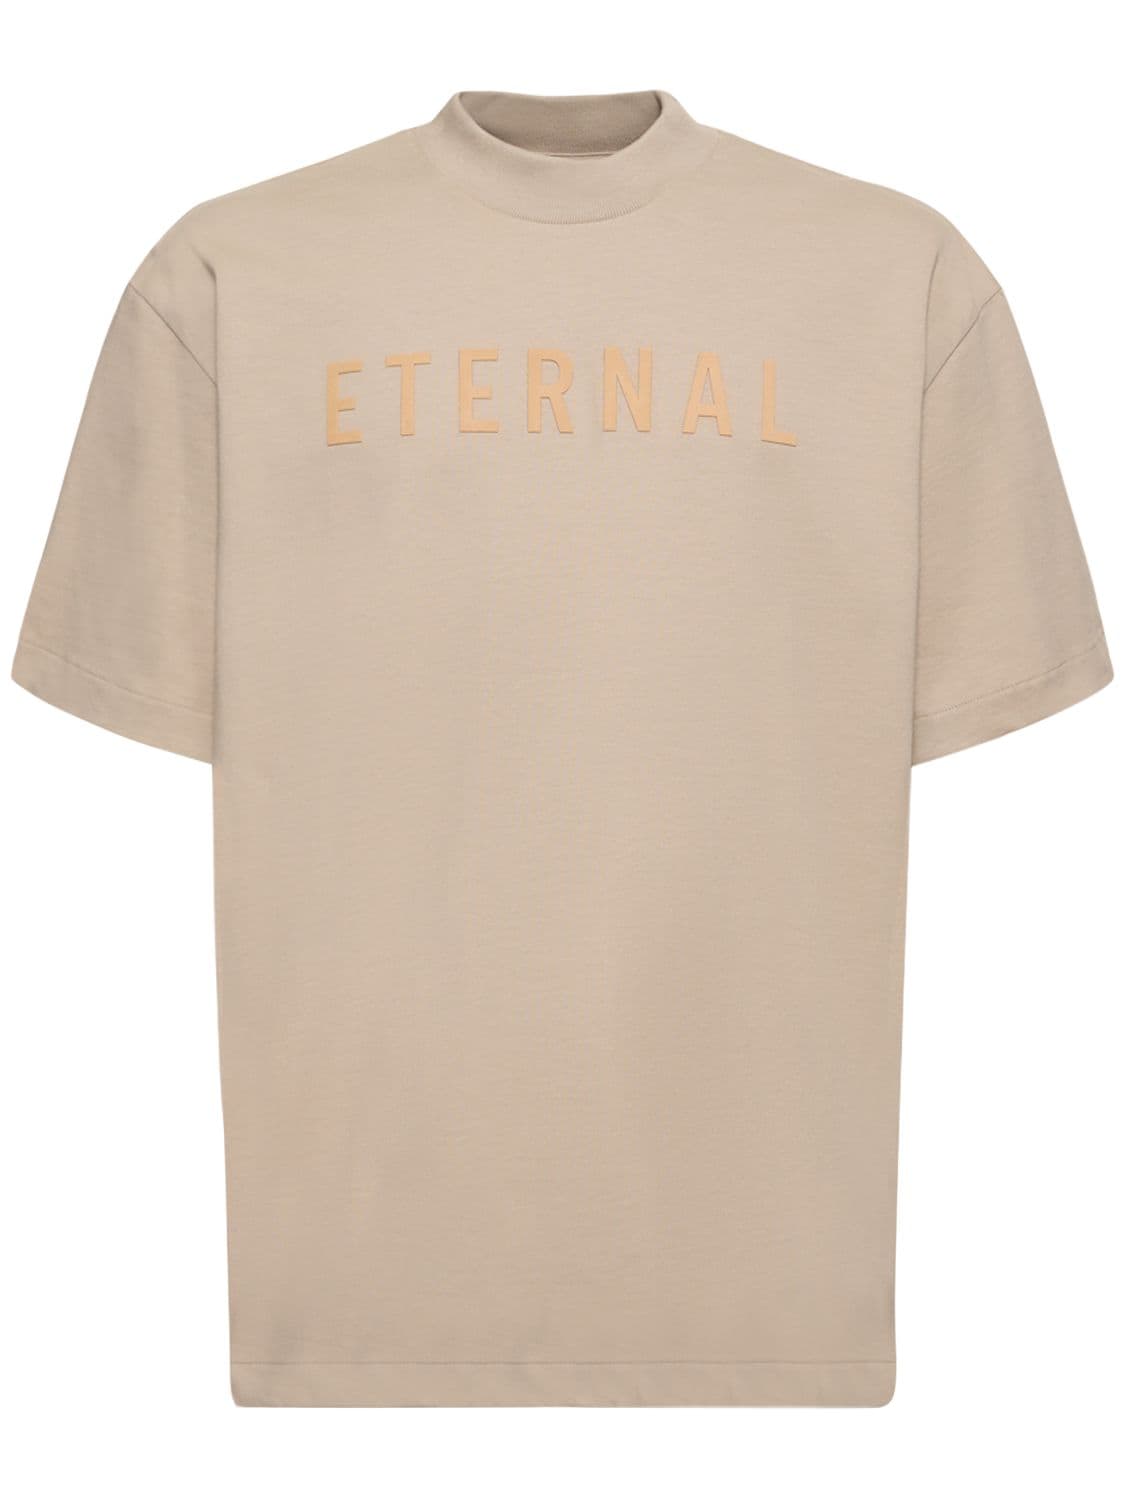 Fear Of God Eternal Printed Cotton Jersey T-shirt In Dusty Beige